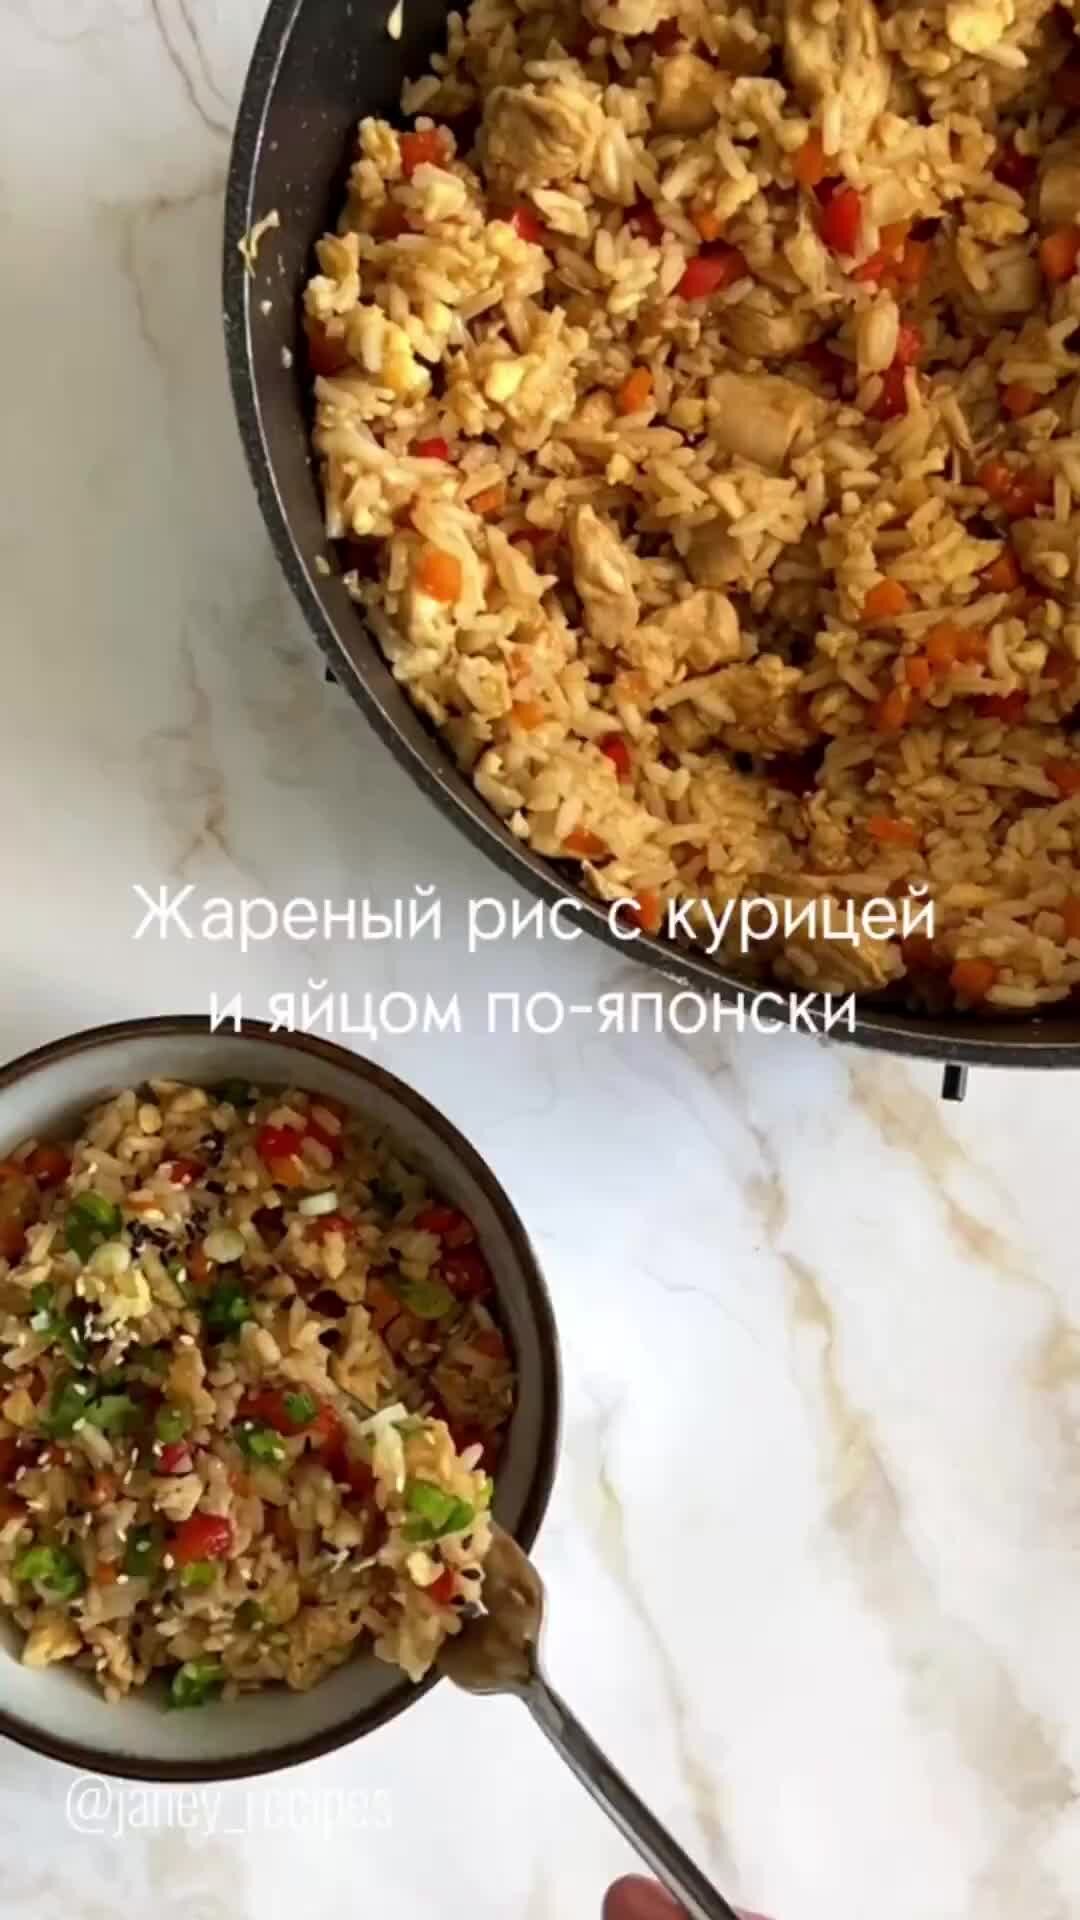 Рис с куриным филе на сковороде - пошаговый рецепт с фото на aikimaster.ru